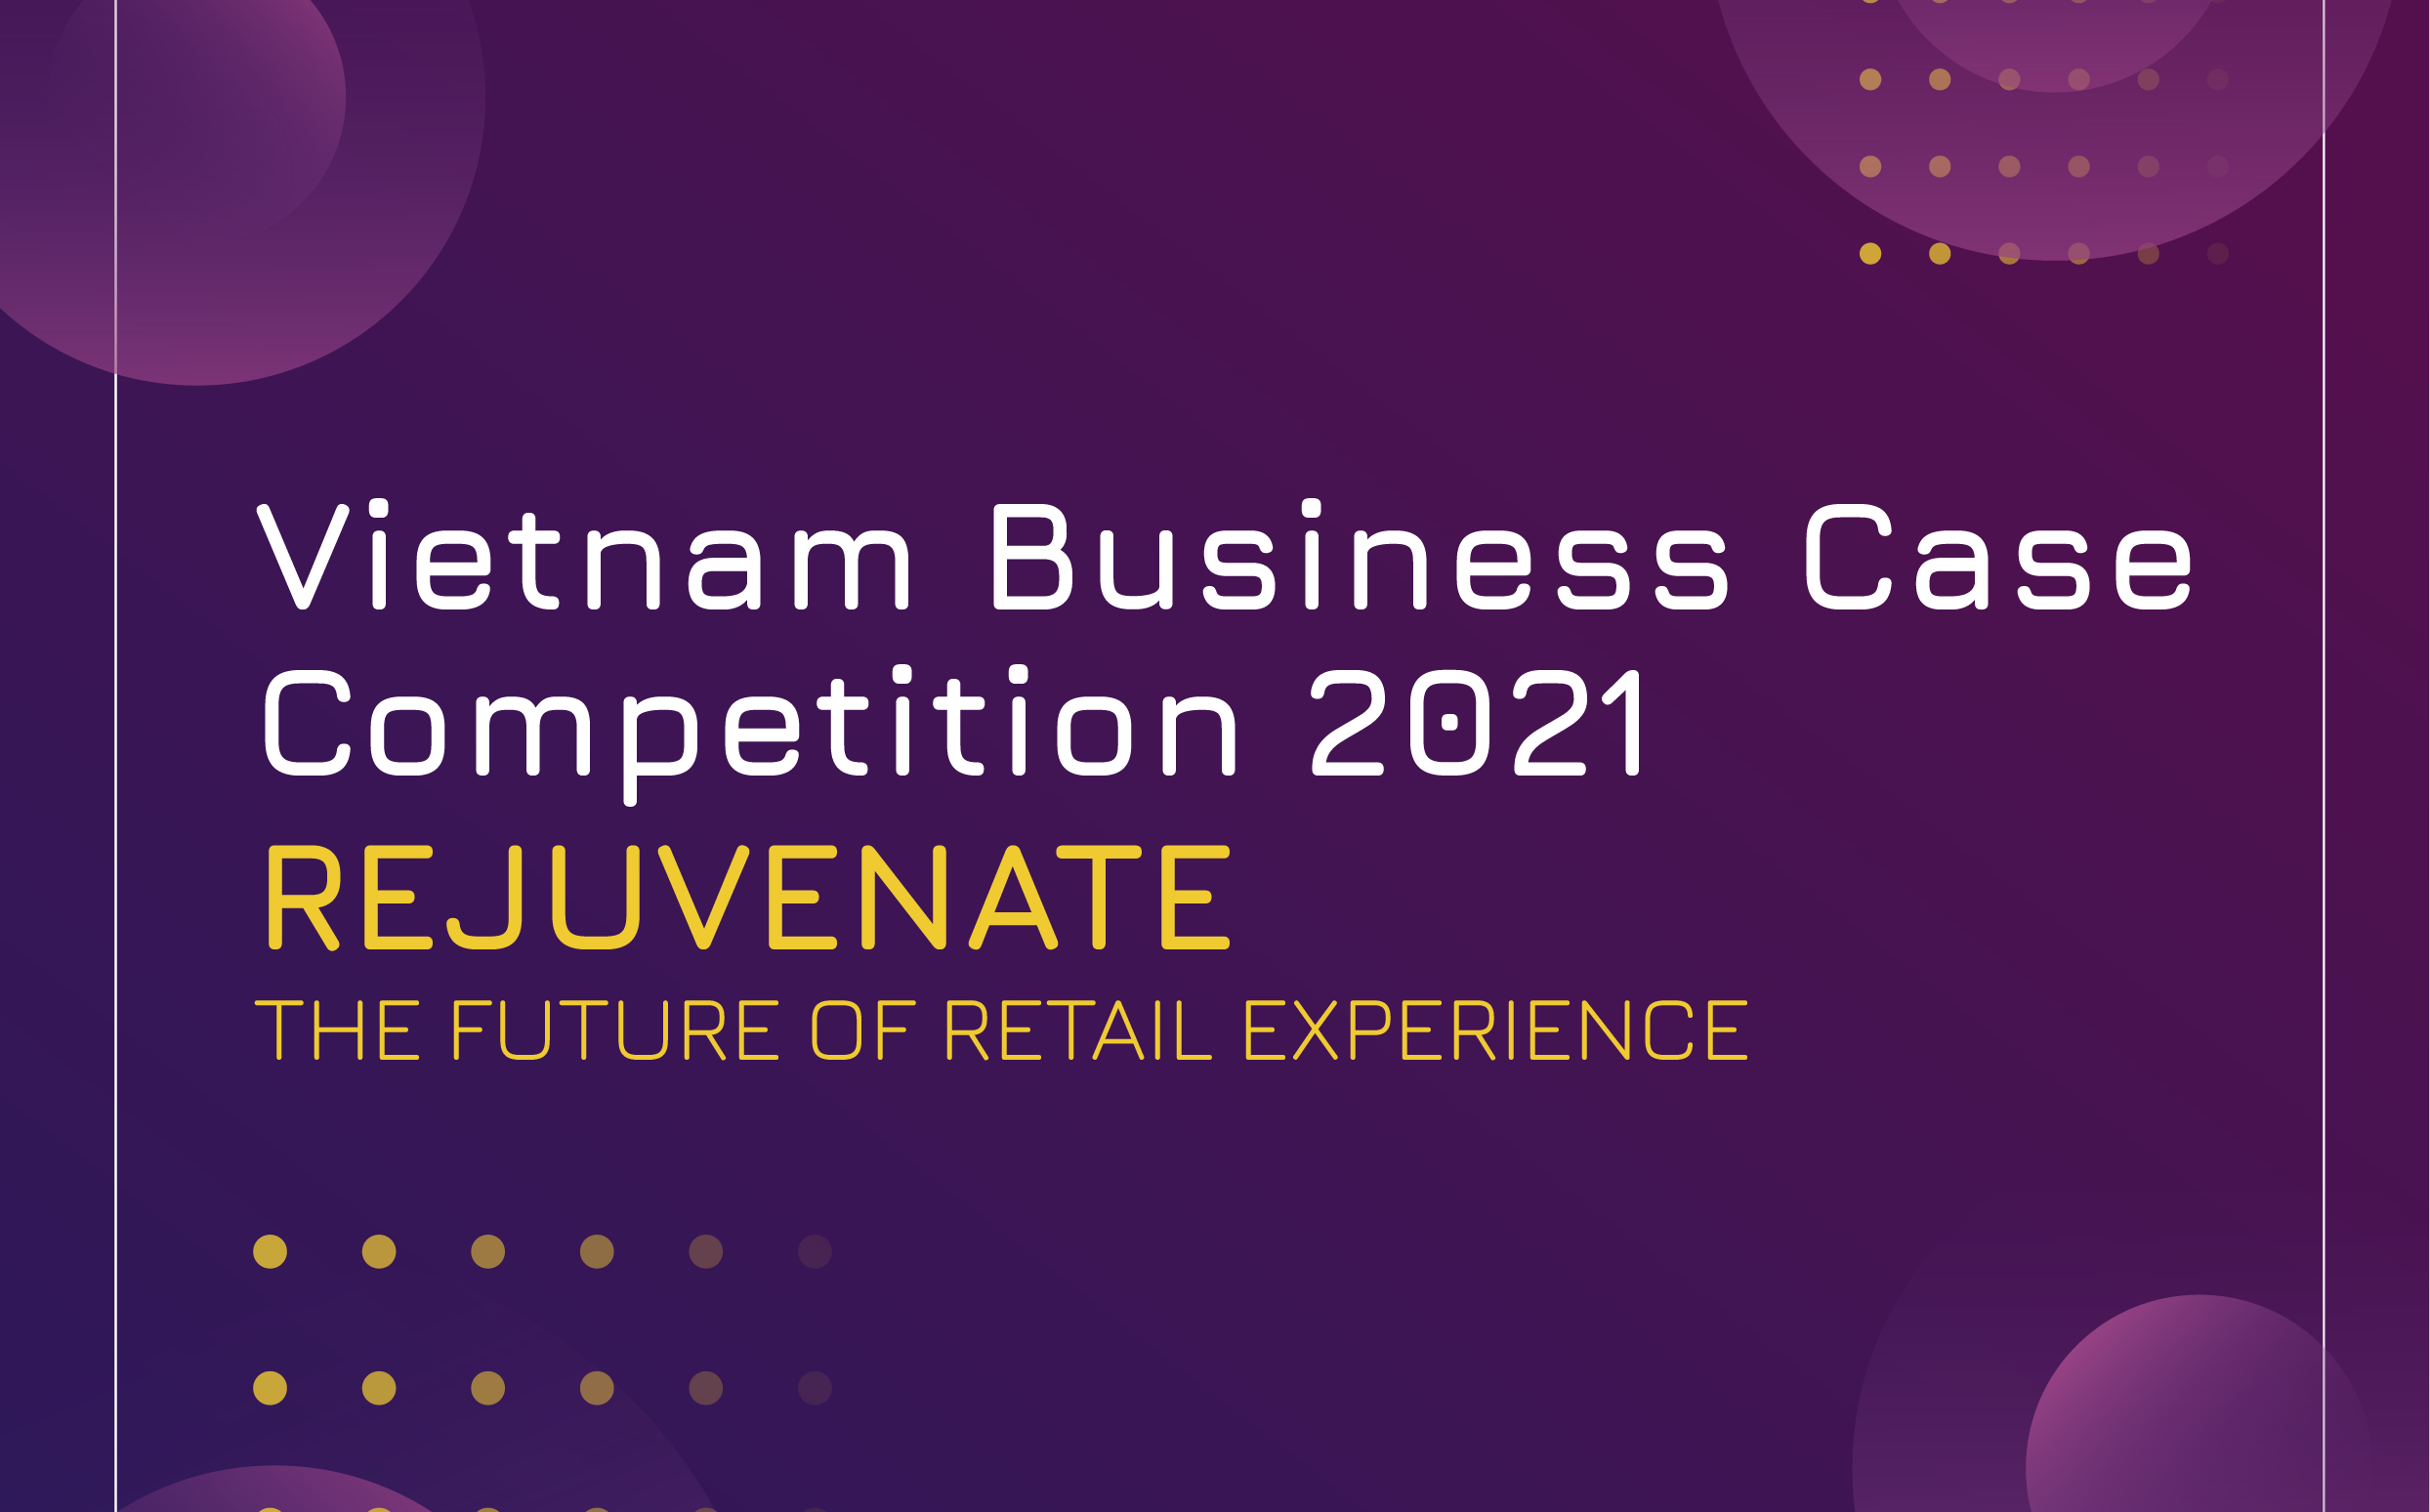 Vietnam Business Case Competition 2021 - VinUni